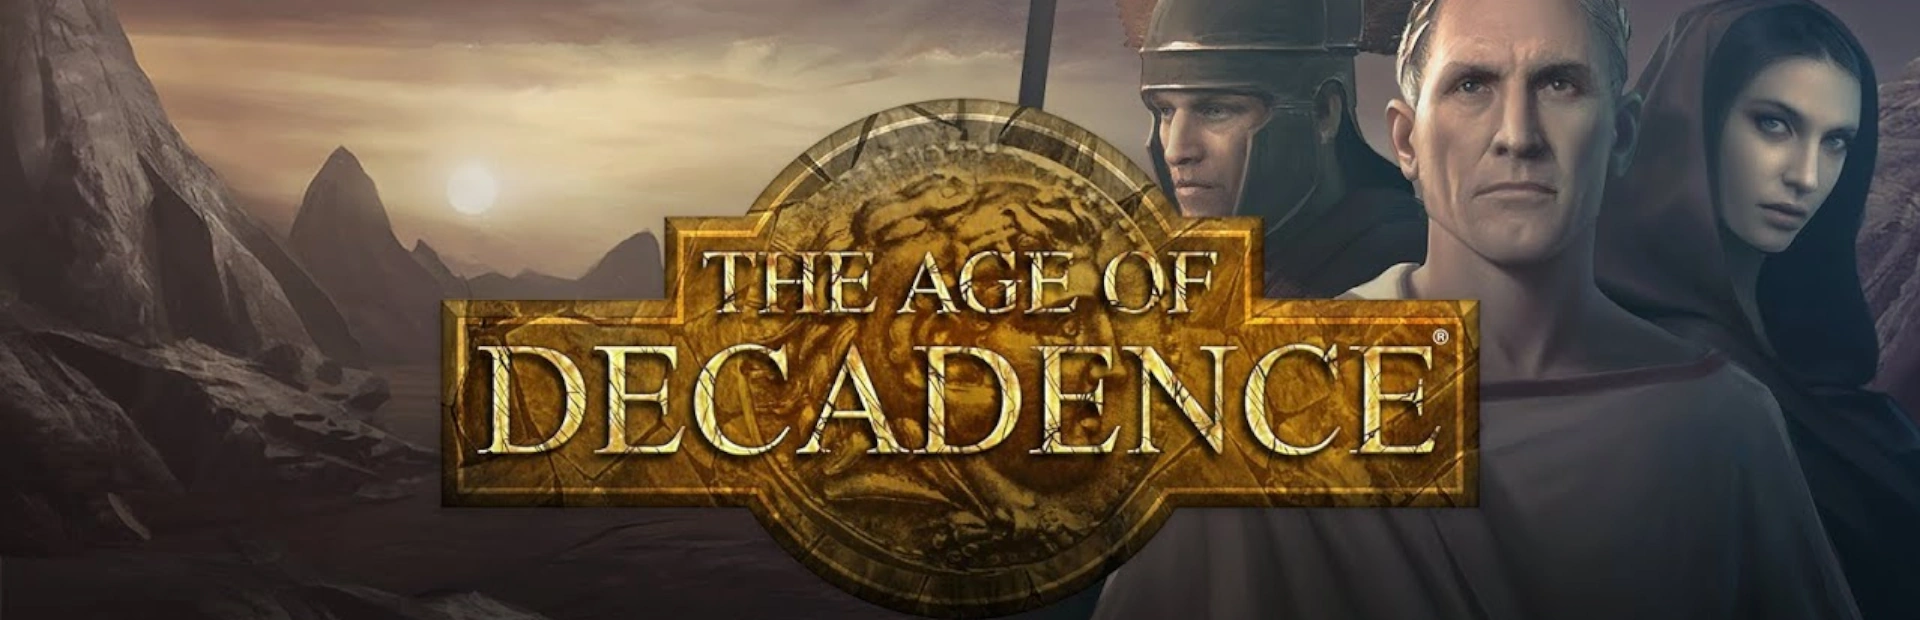 دانلود بازی The Age of Decadence برای کامپیوتر | گیمباتو